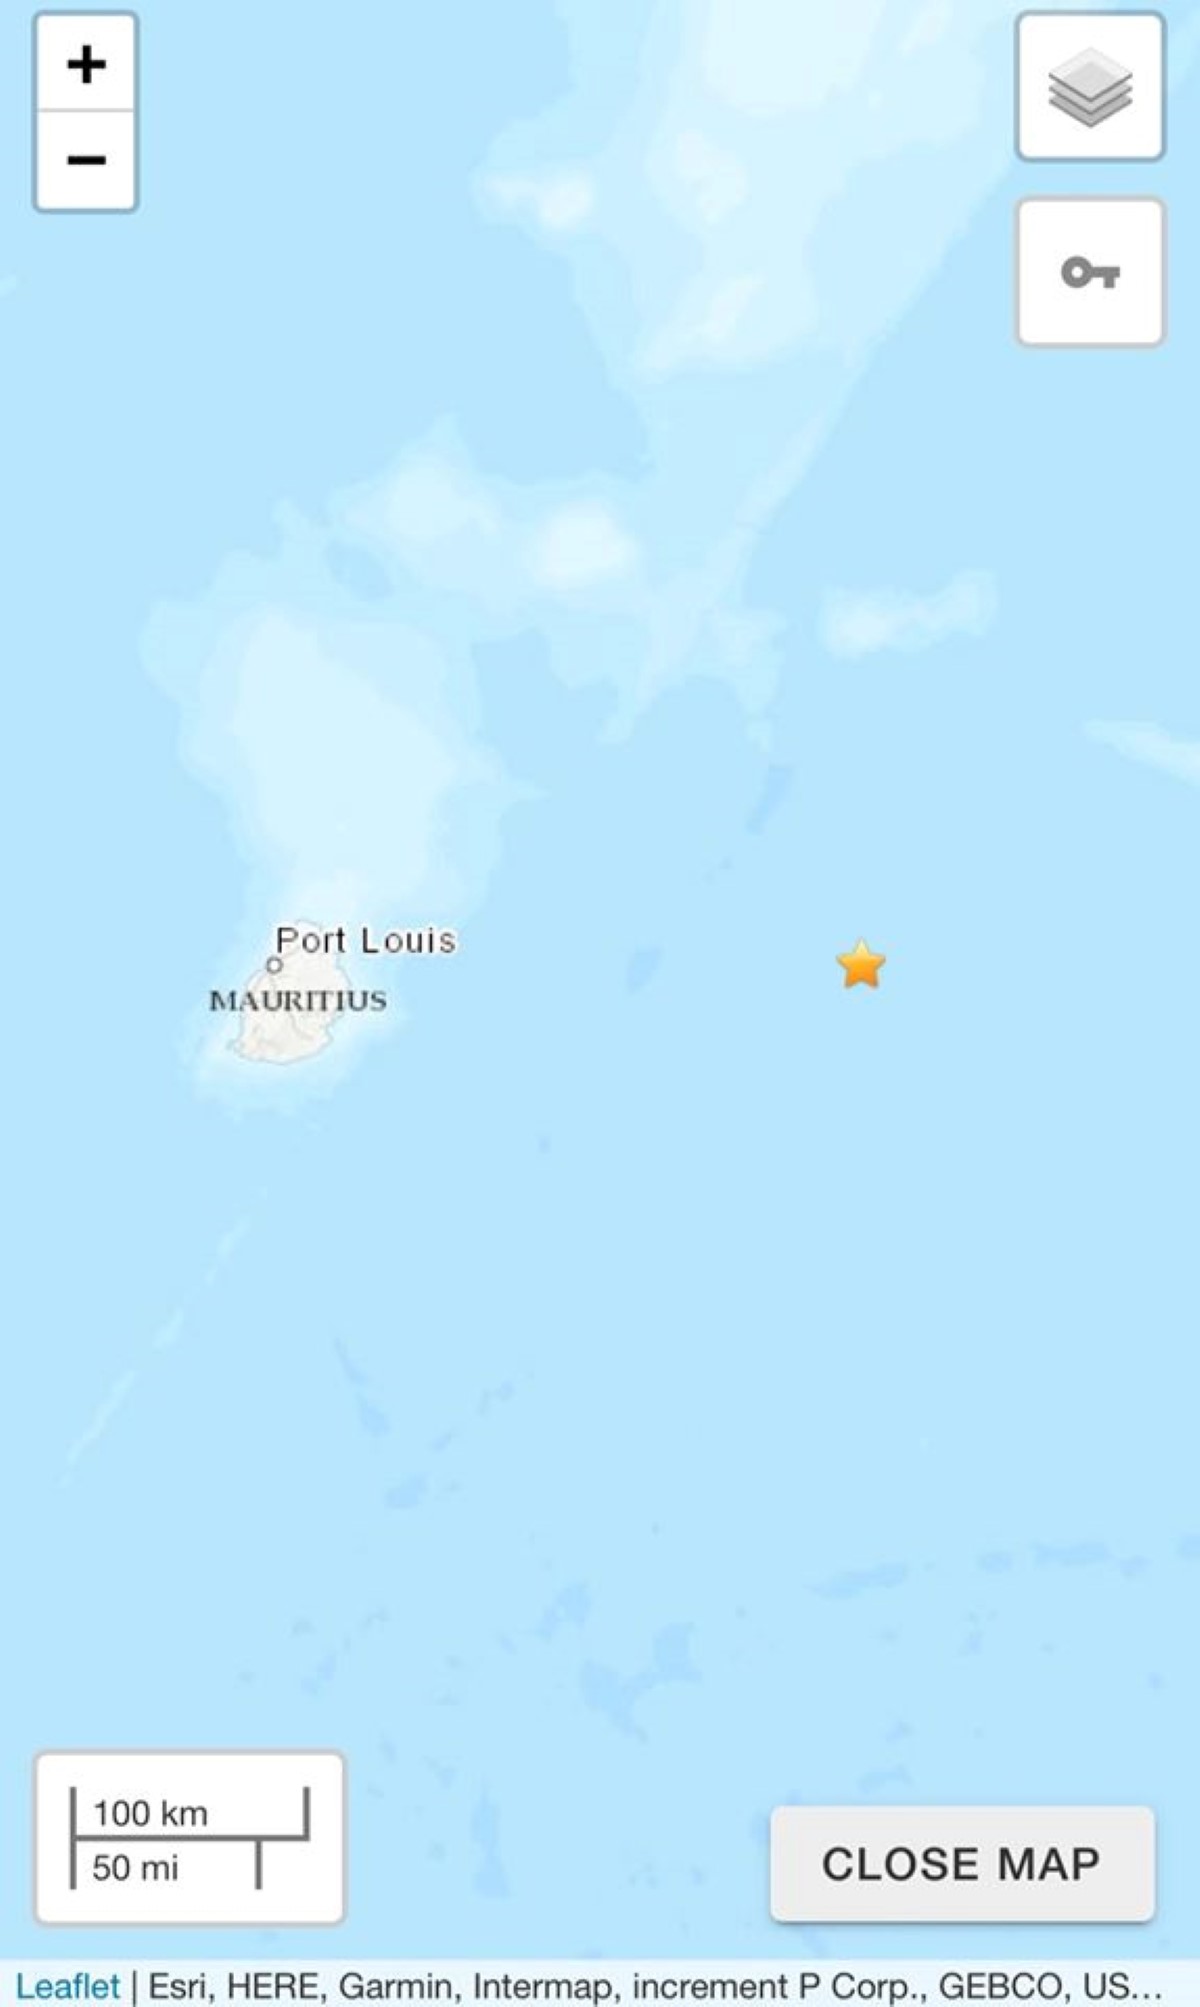 La Terre a tremblé à Maurice : un séisme de magnitude 4,8 enregistré